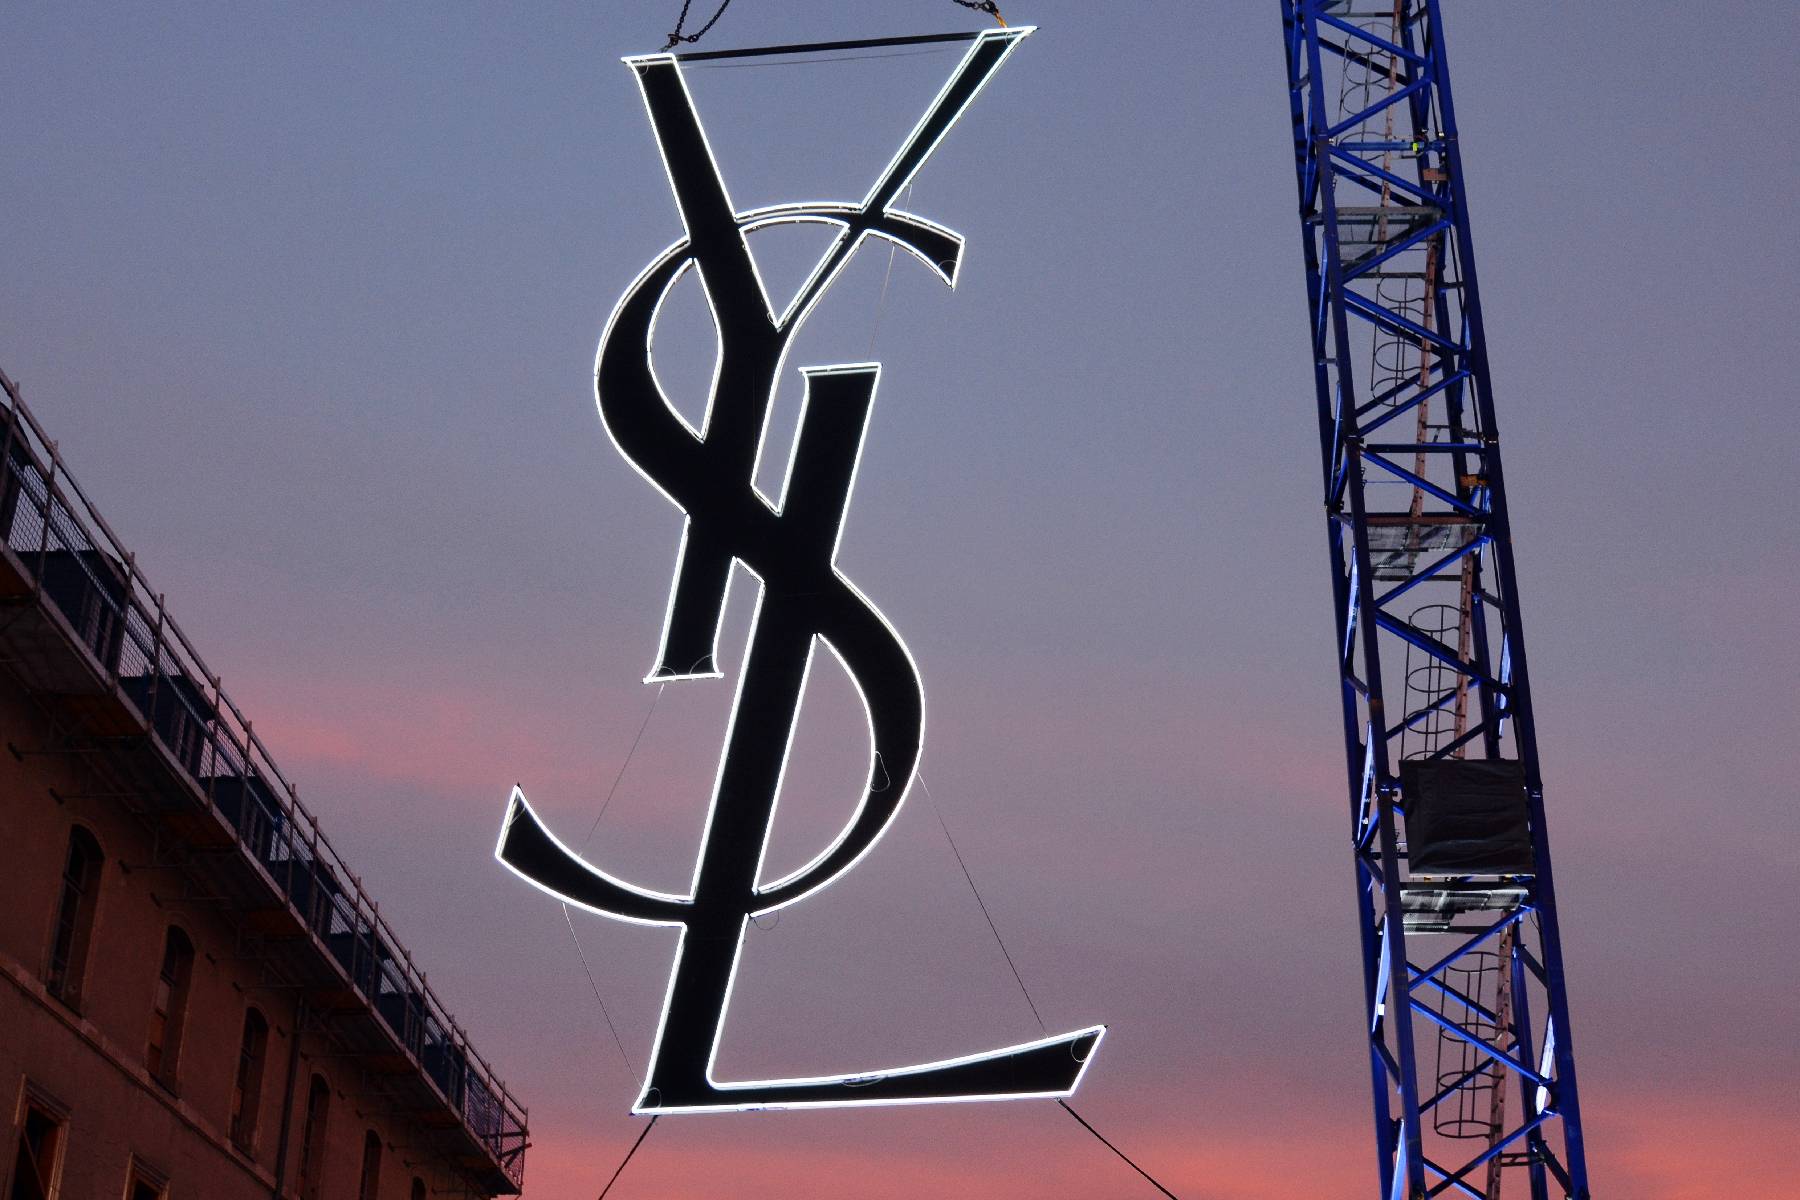 La marque de luxe Saint Laurent annonce la création d'une société de production de films